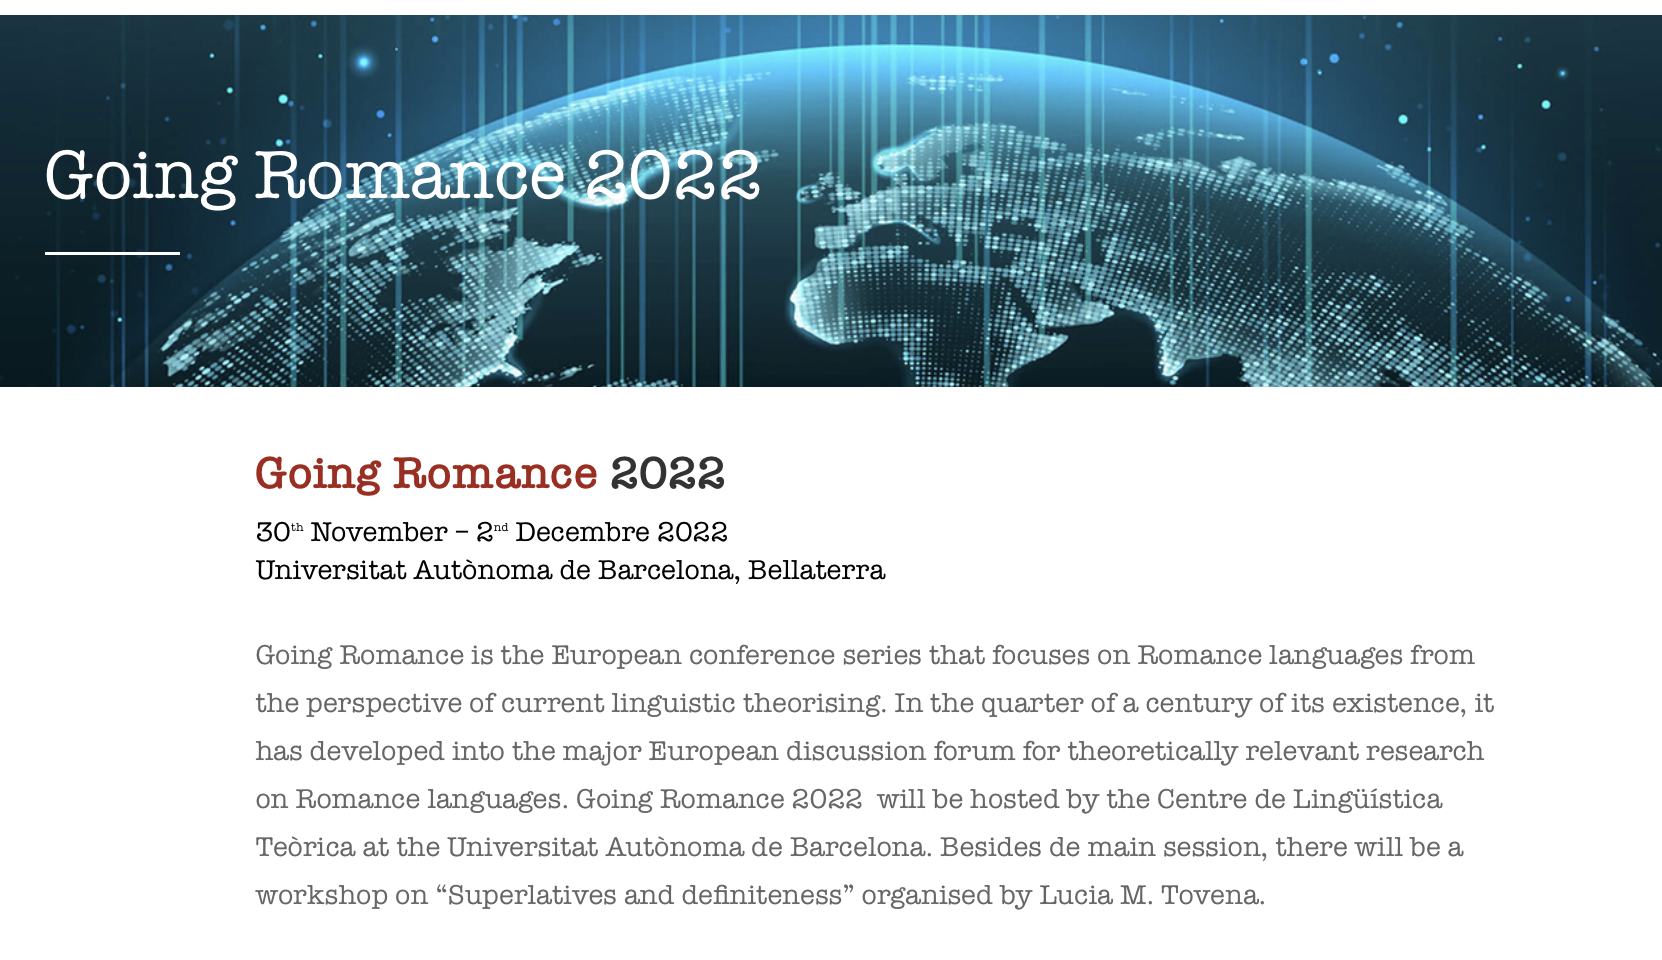 Going Romance 2022